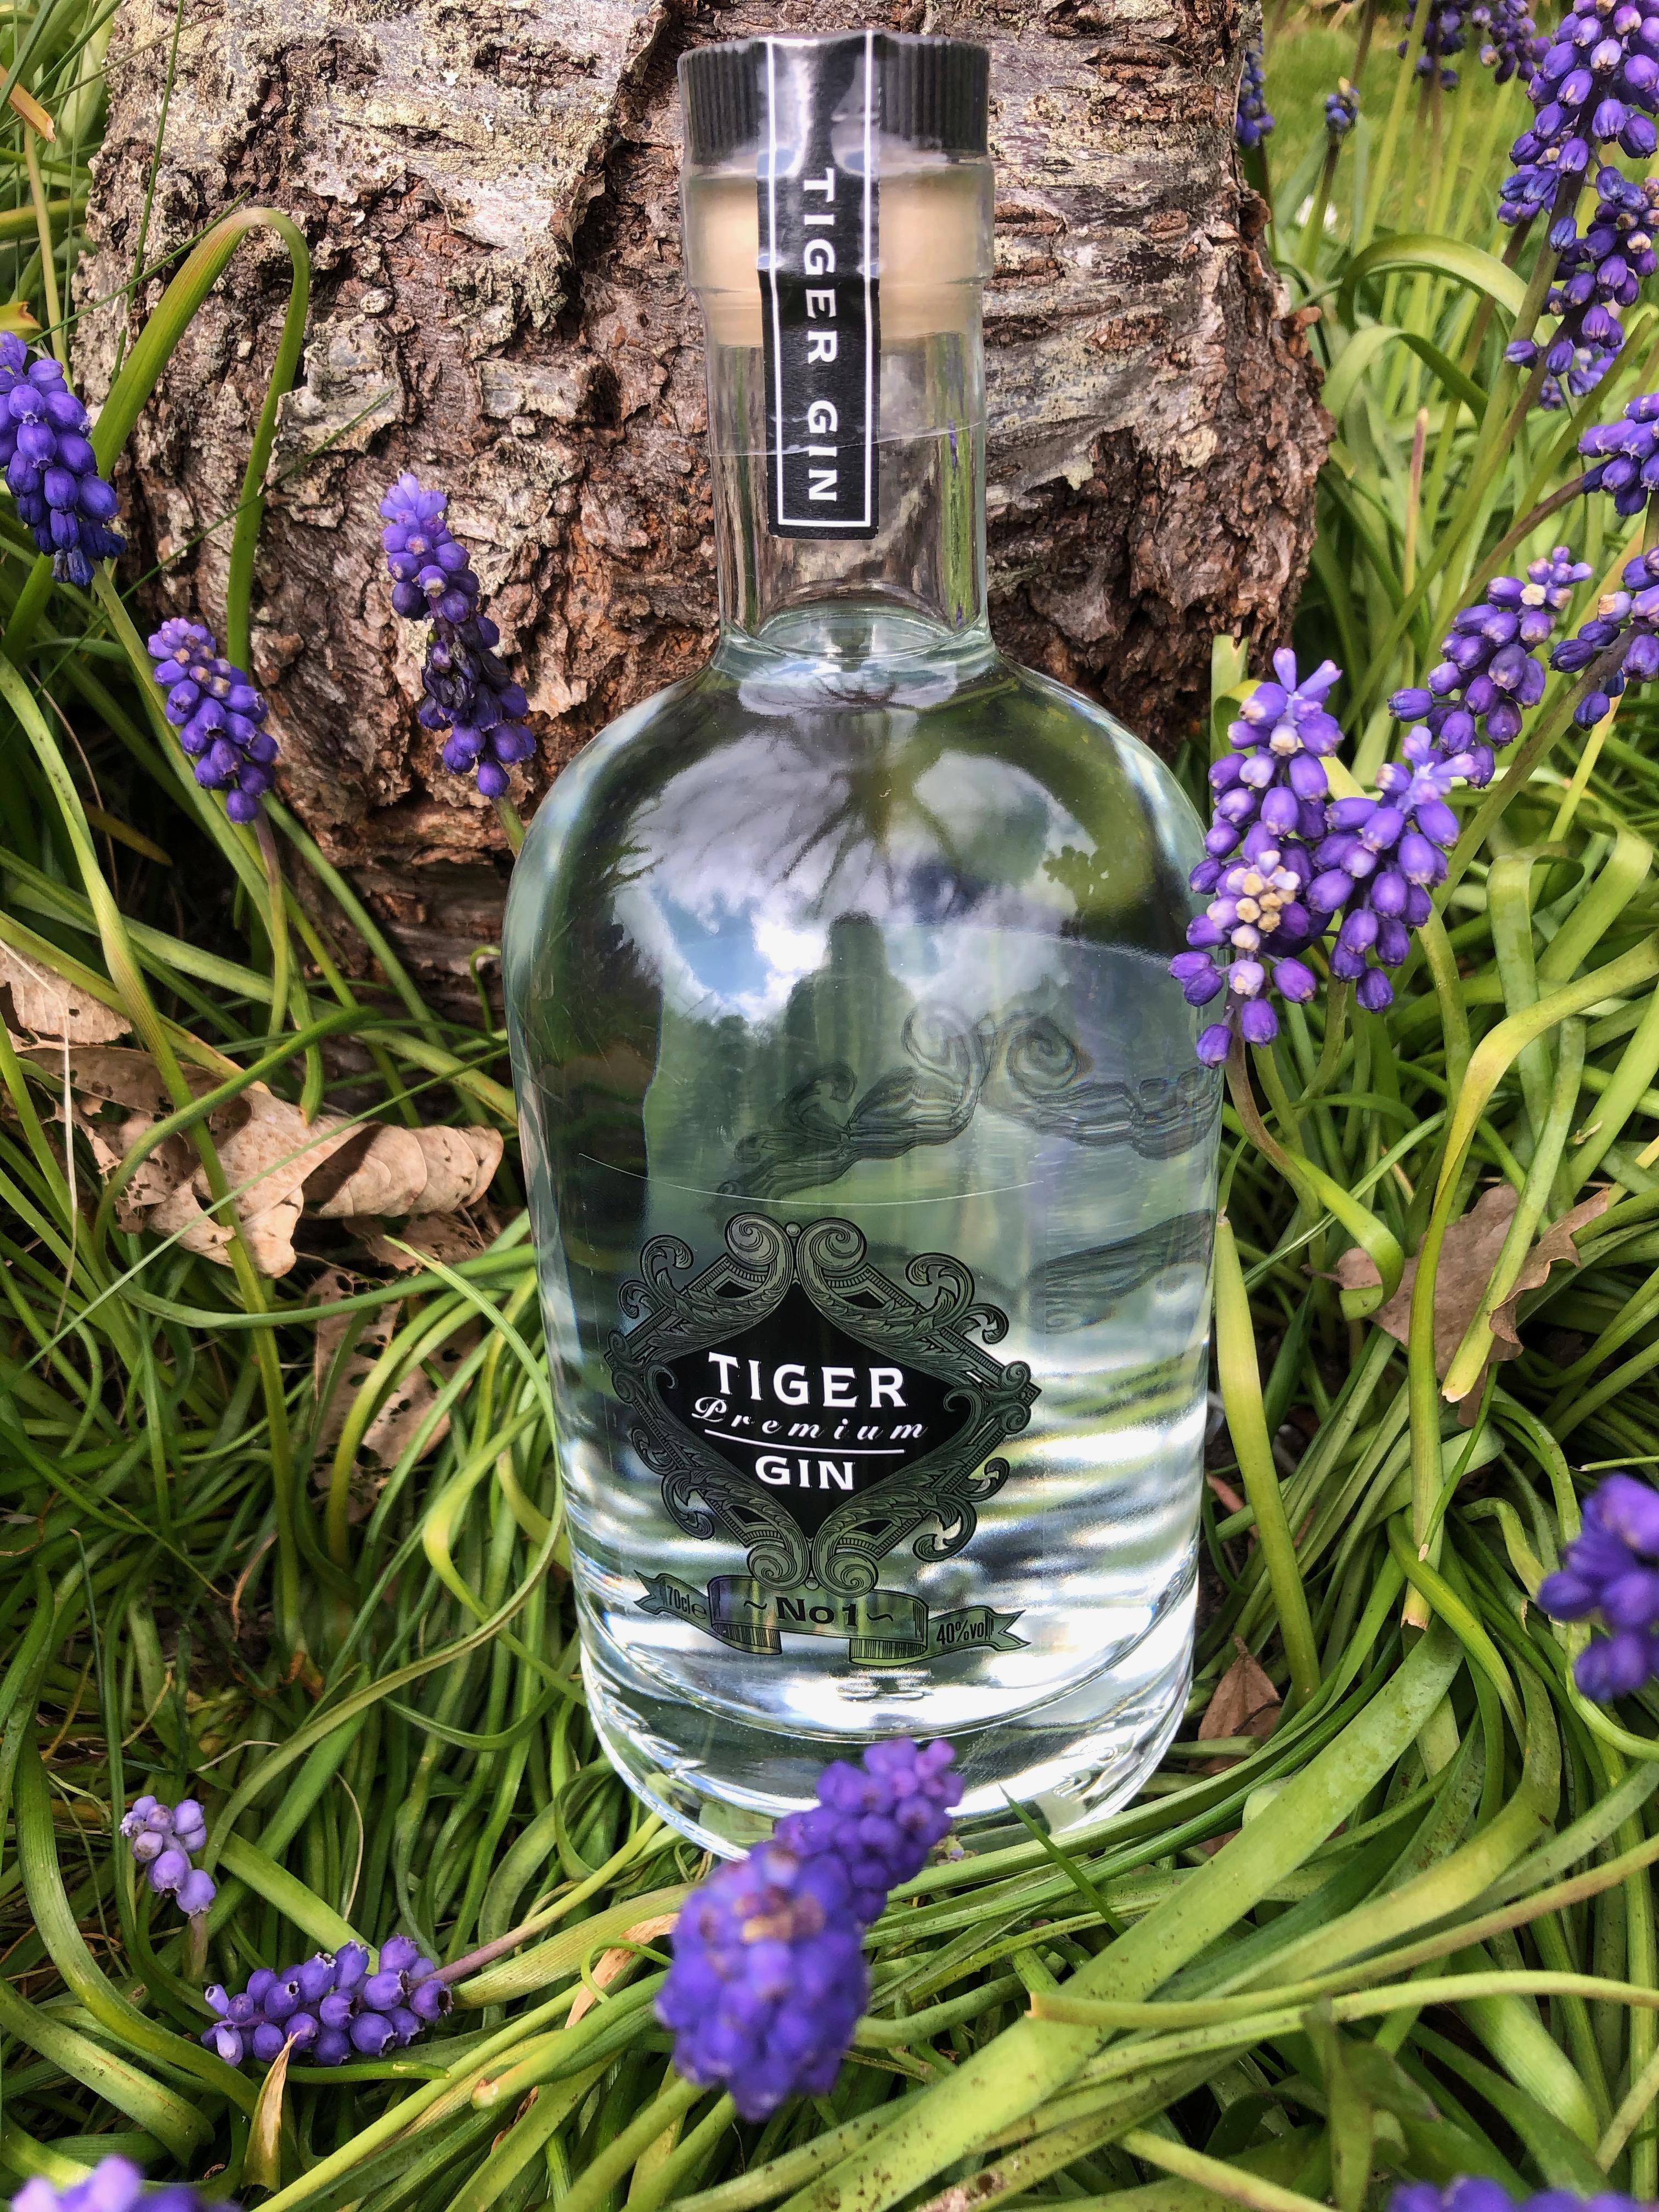 Tiger Gin